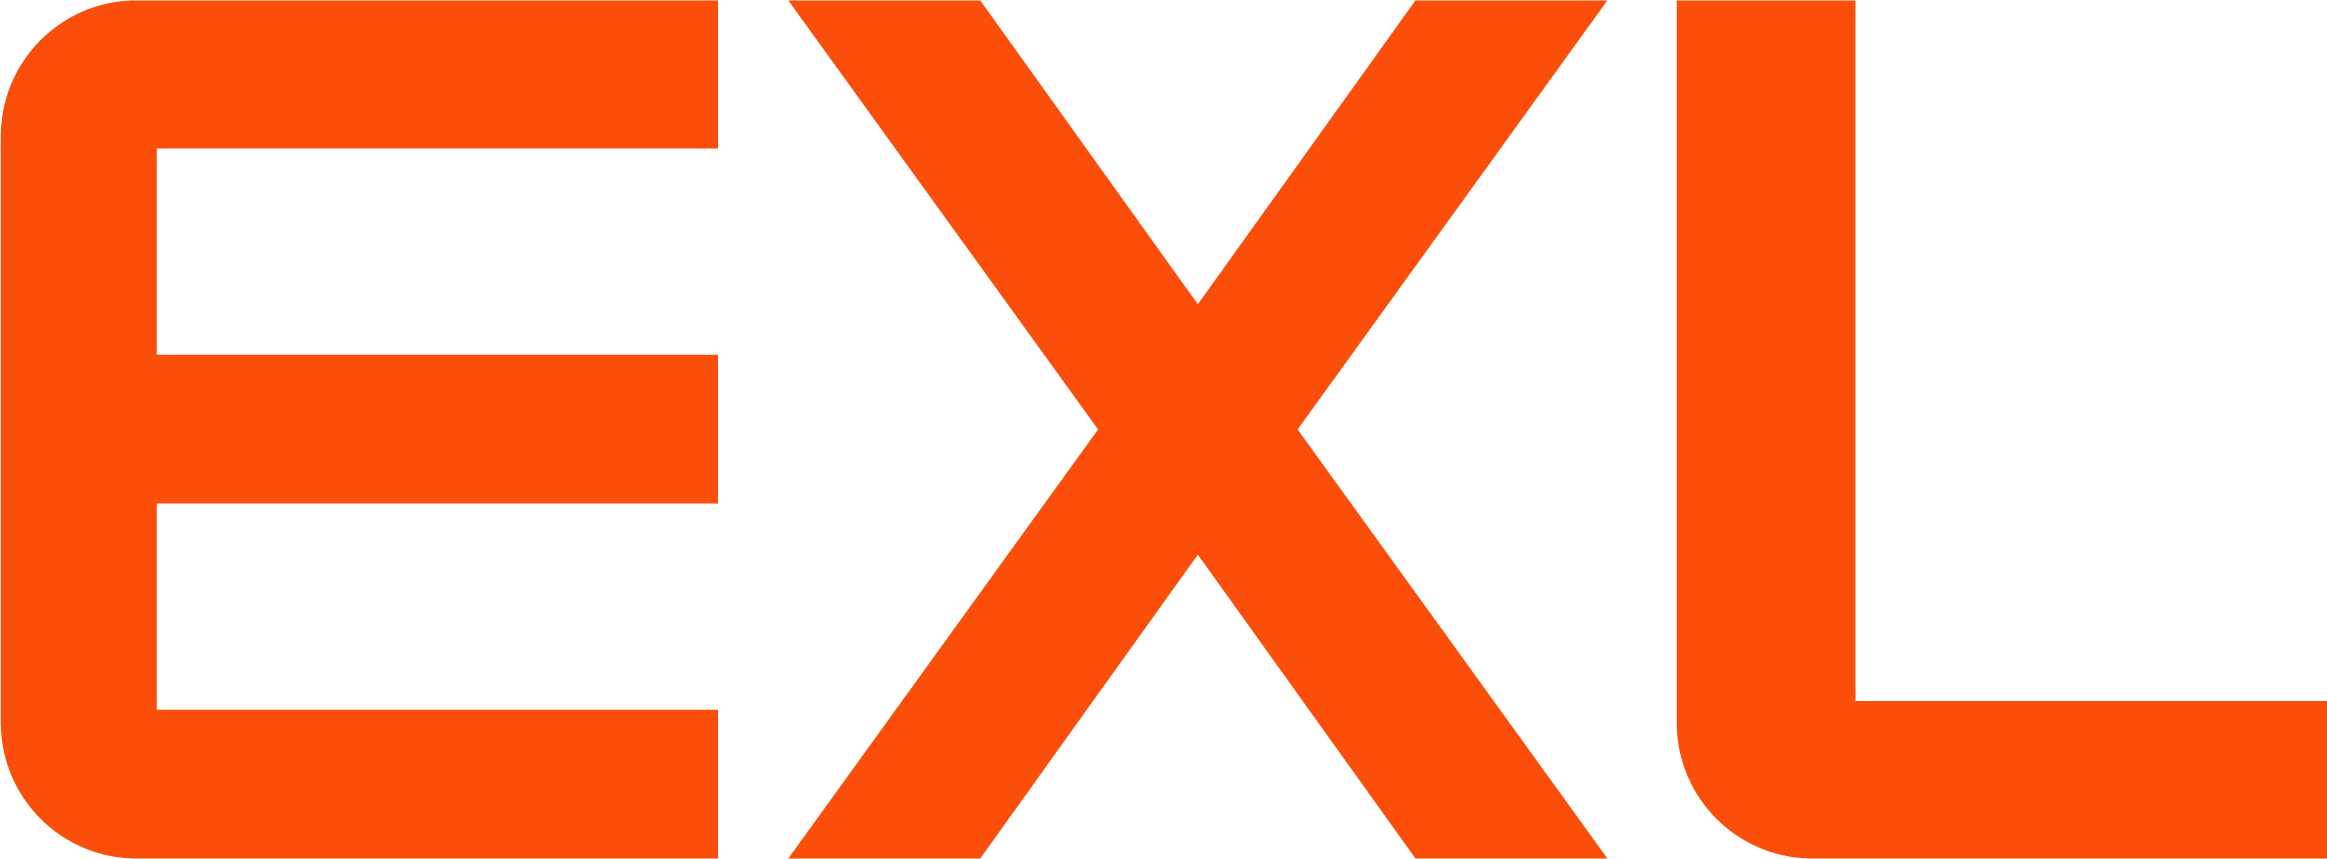 exl_logo_rgb_orange_pos.png